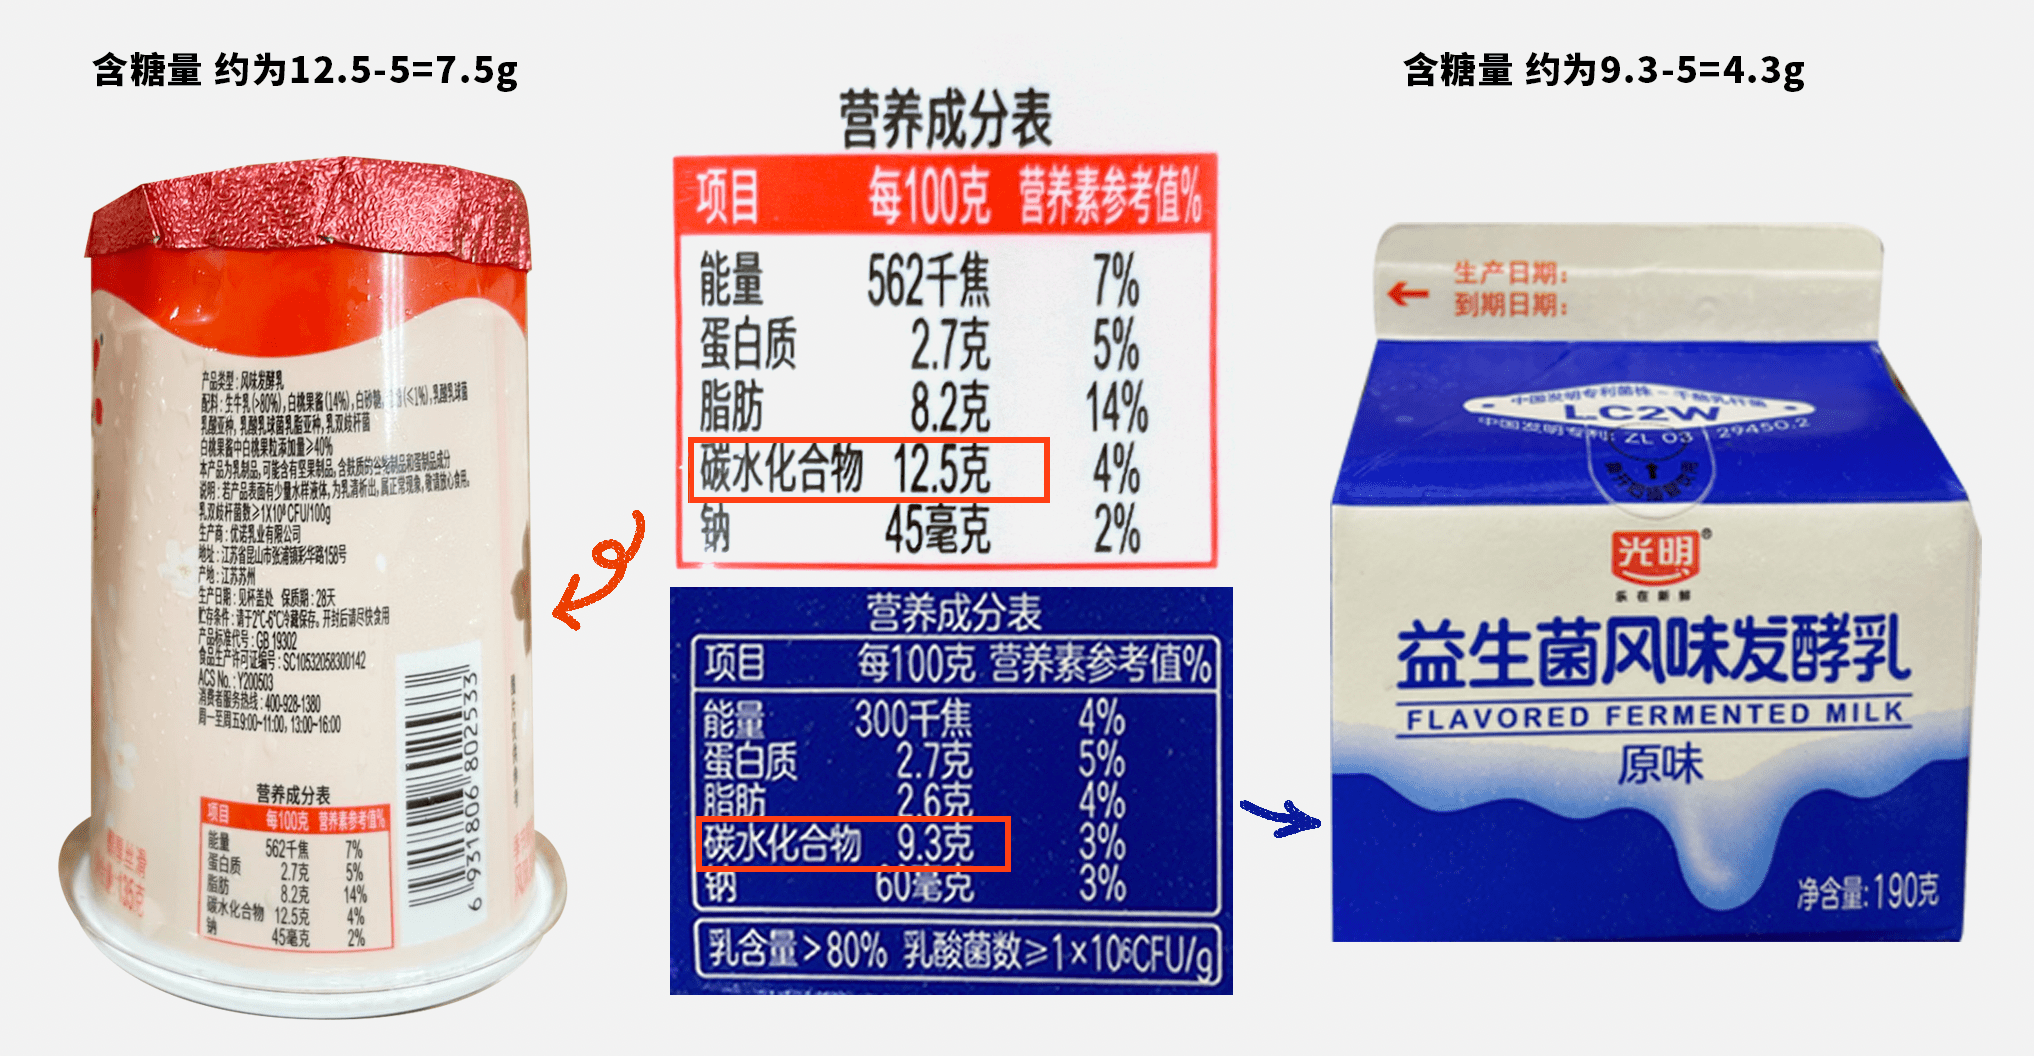 发酵乳,酸乳,复原乳到底哪一款才是酸奶?